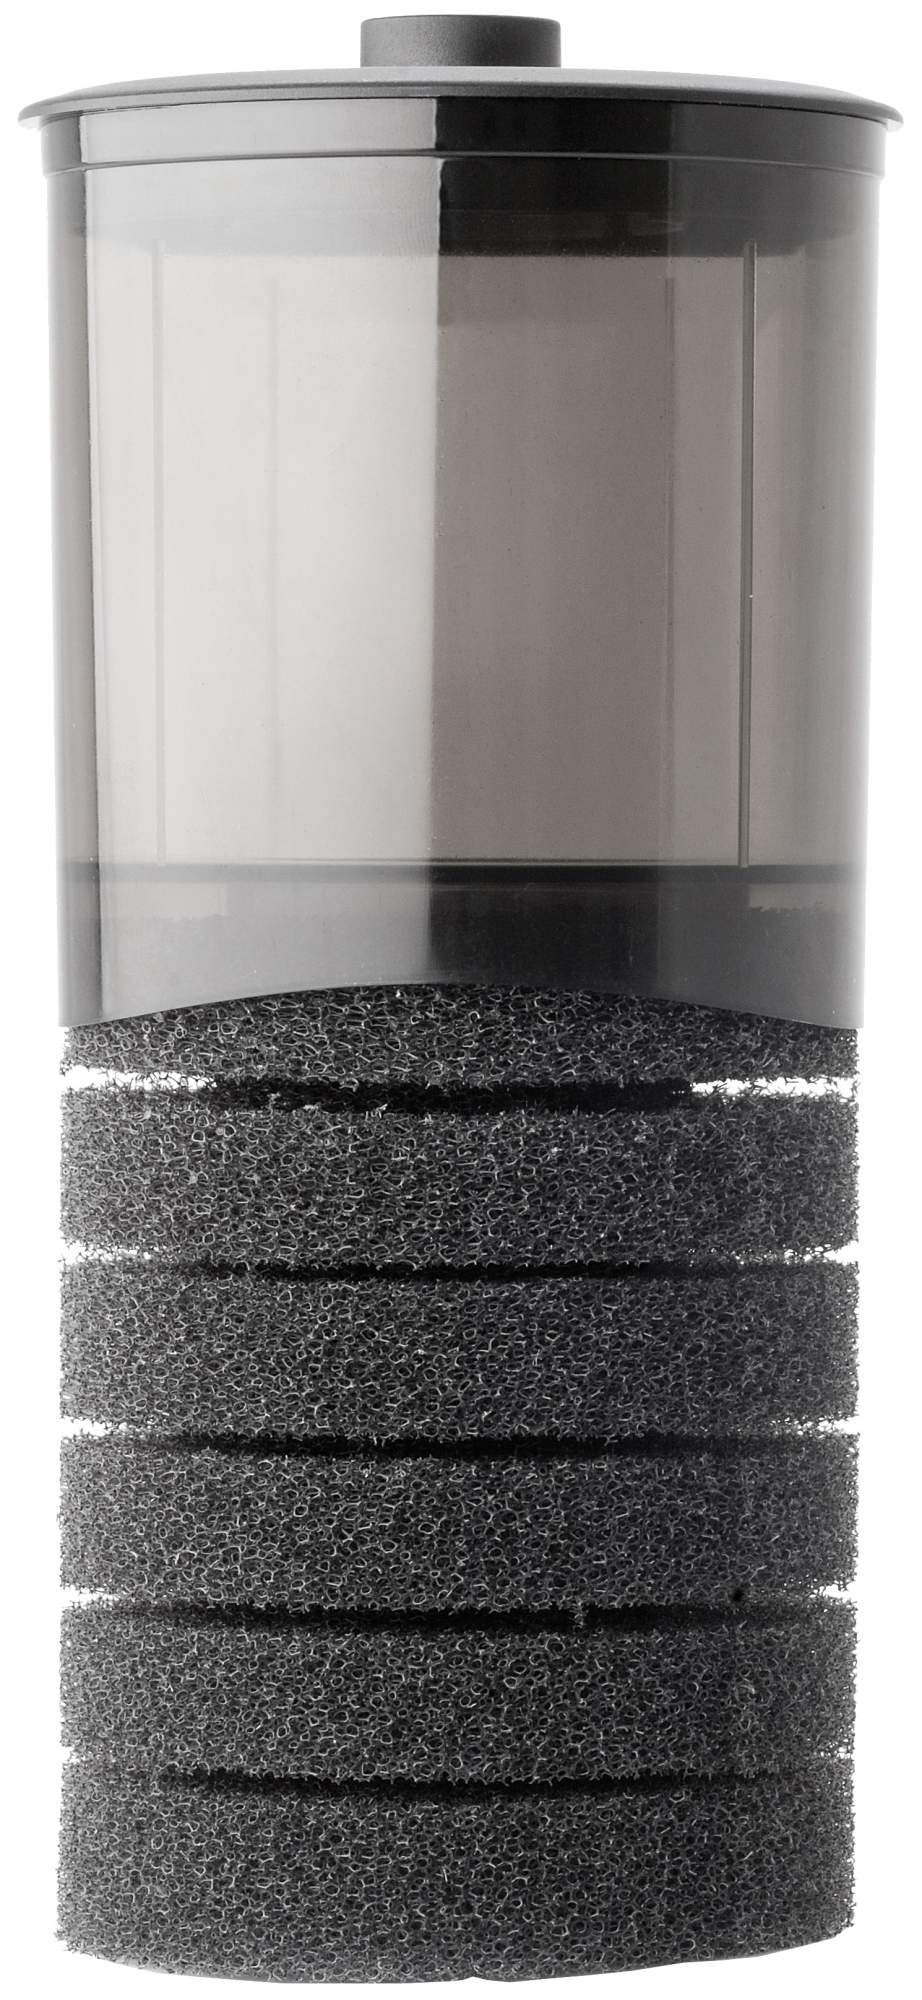 Фильтр для аквариума внутренний Aquaеl Turbo Filter 1500, 1500 л/ч, 22 Вт